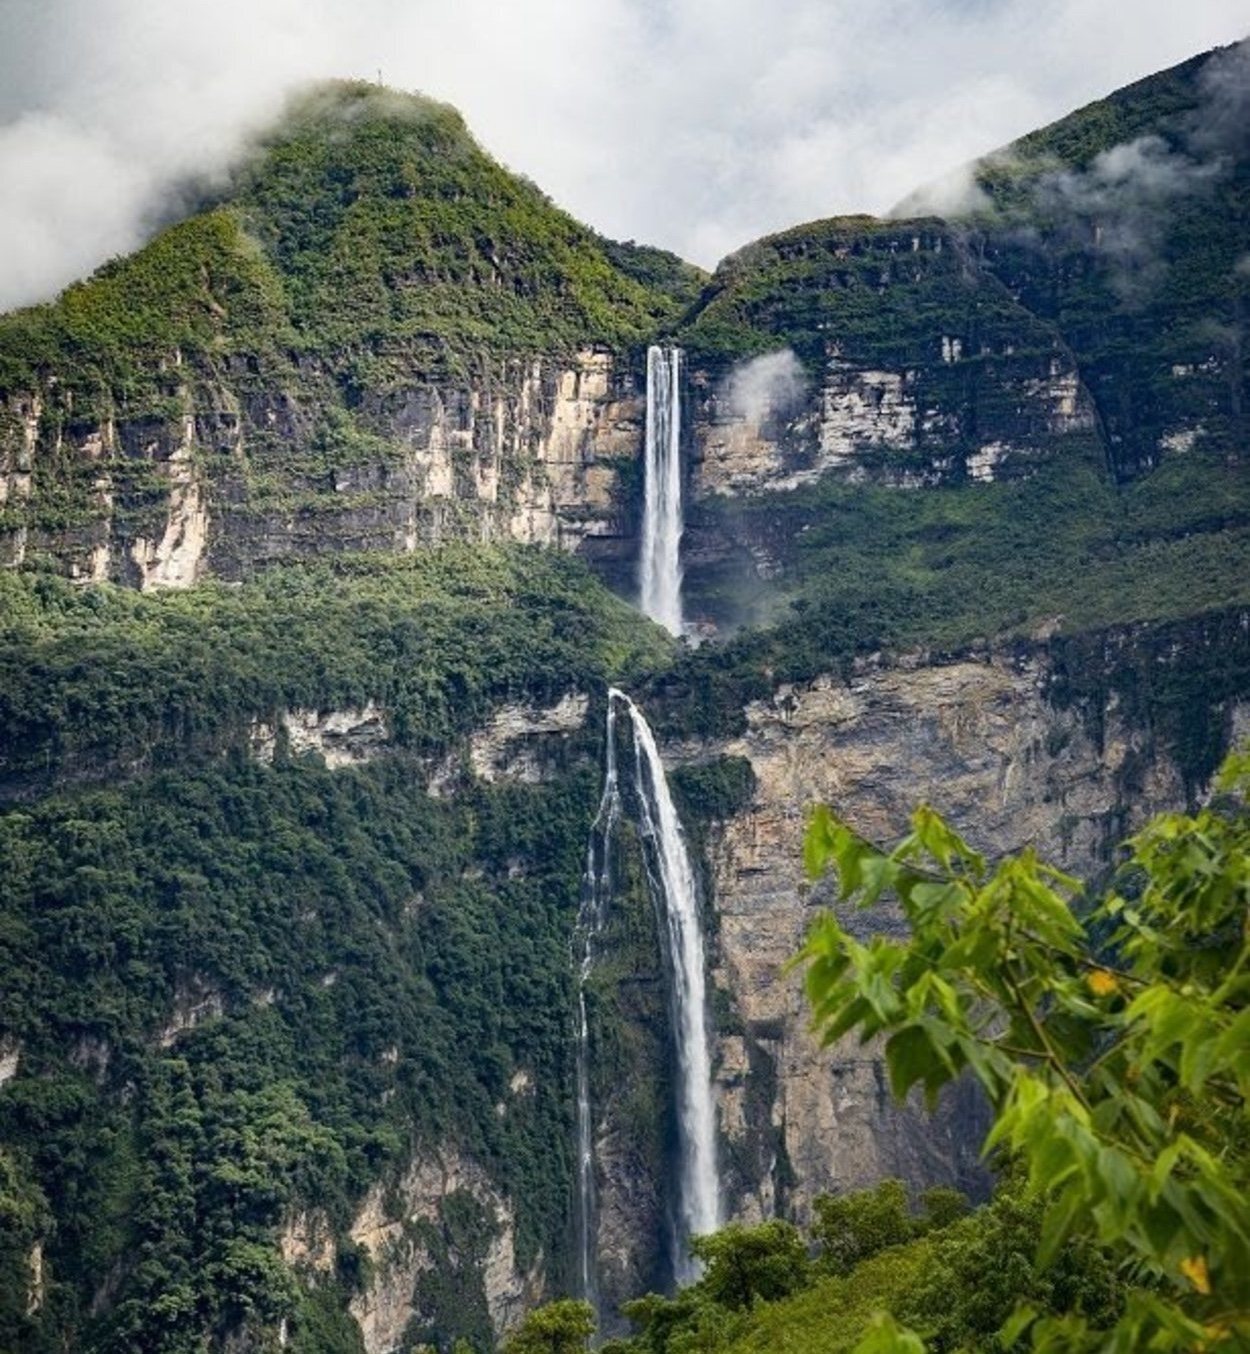 La catarata Gocta es una caída de agua de más de 770 metros de altura